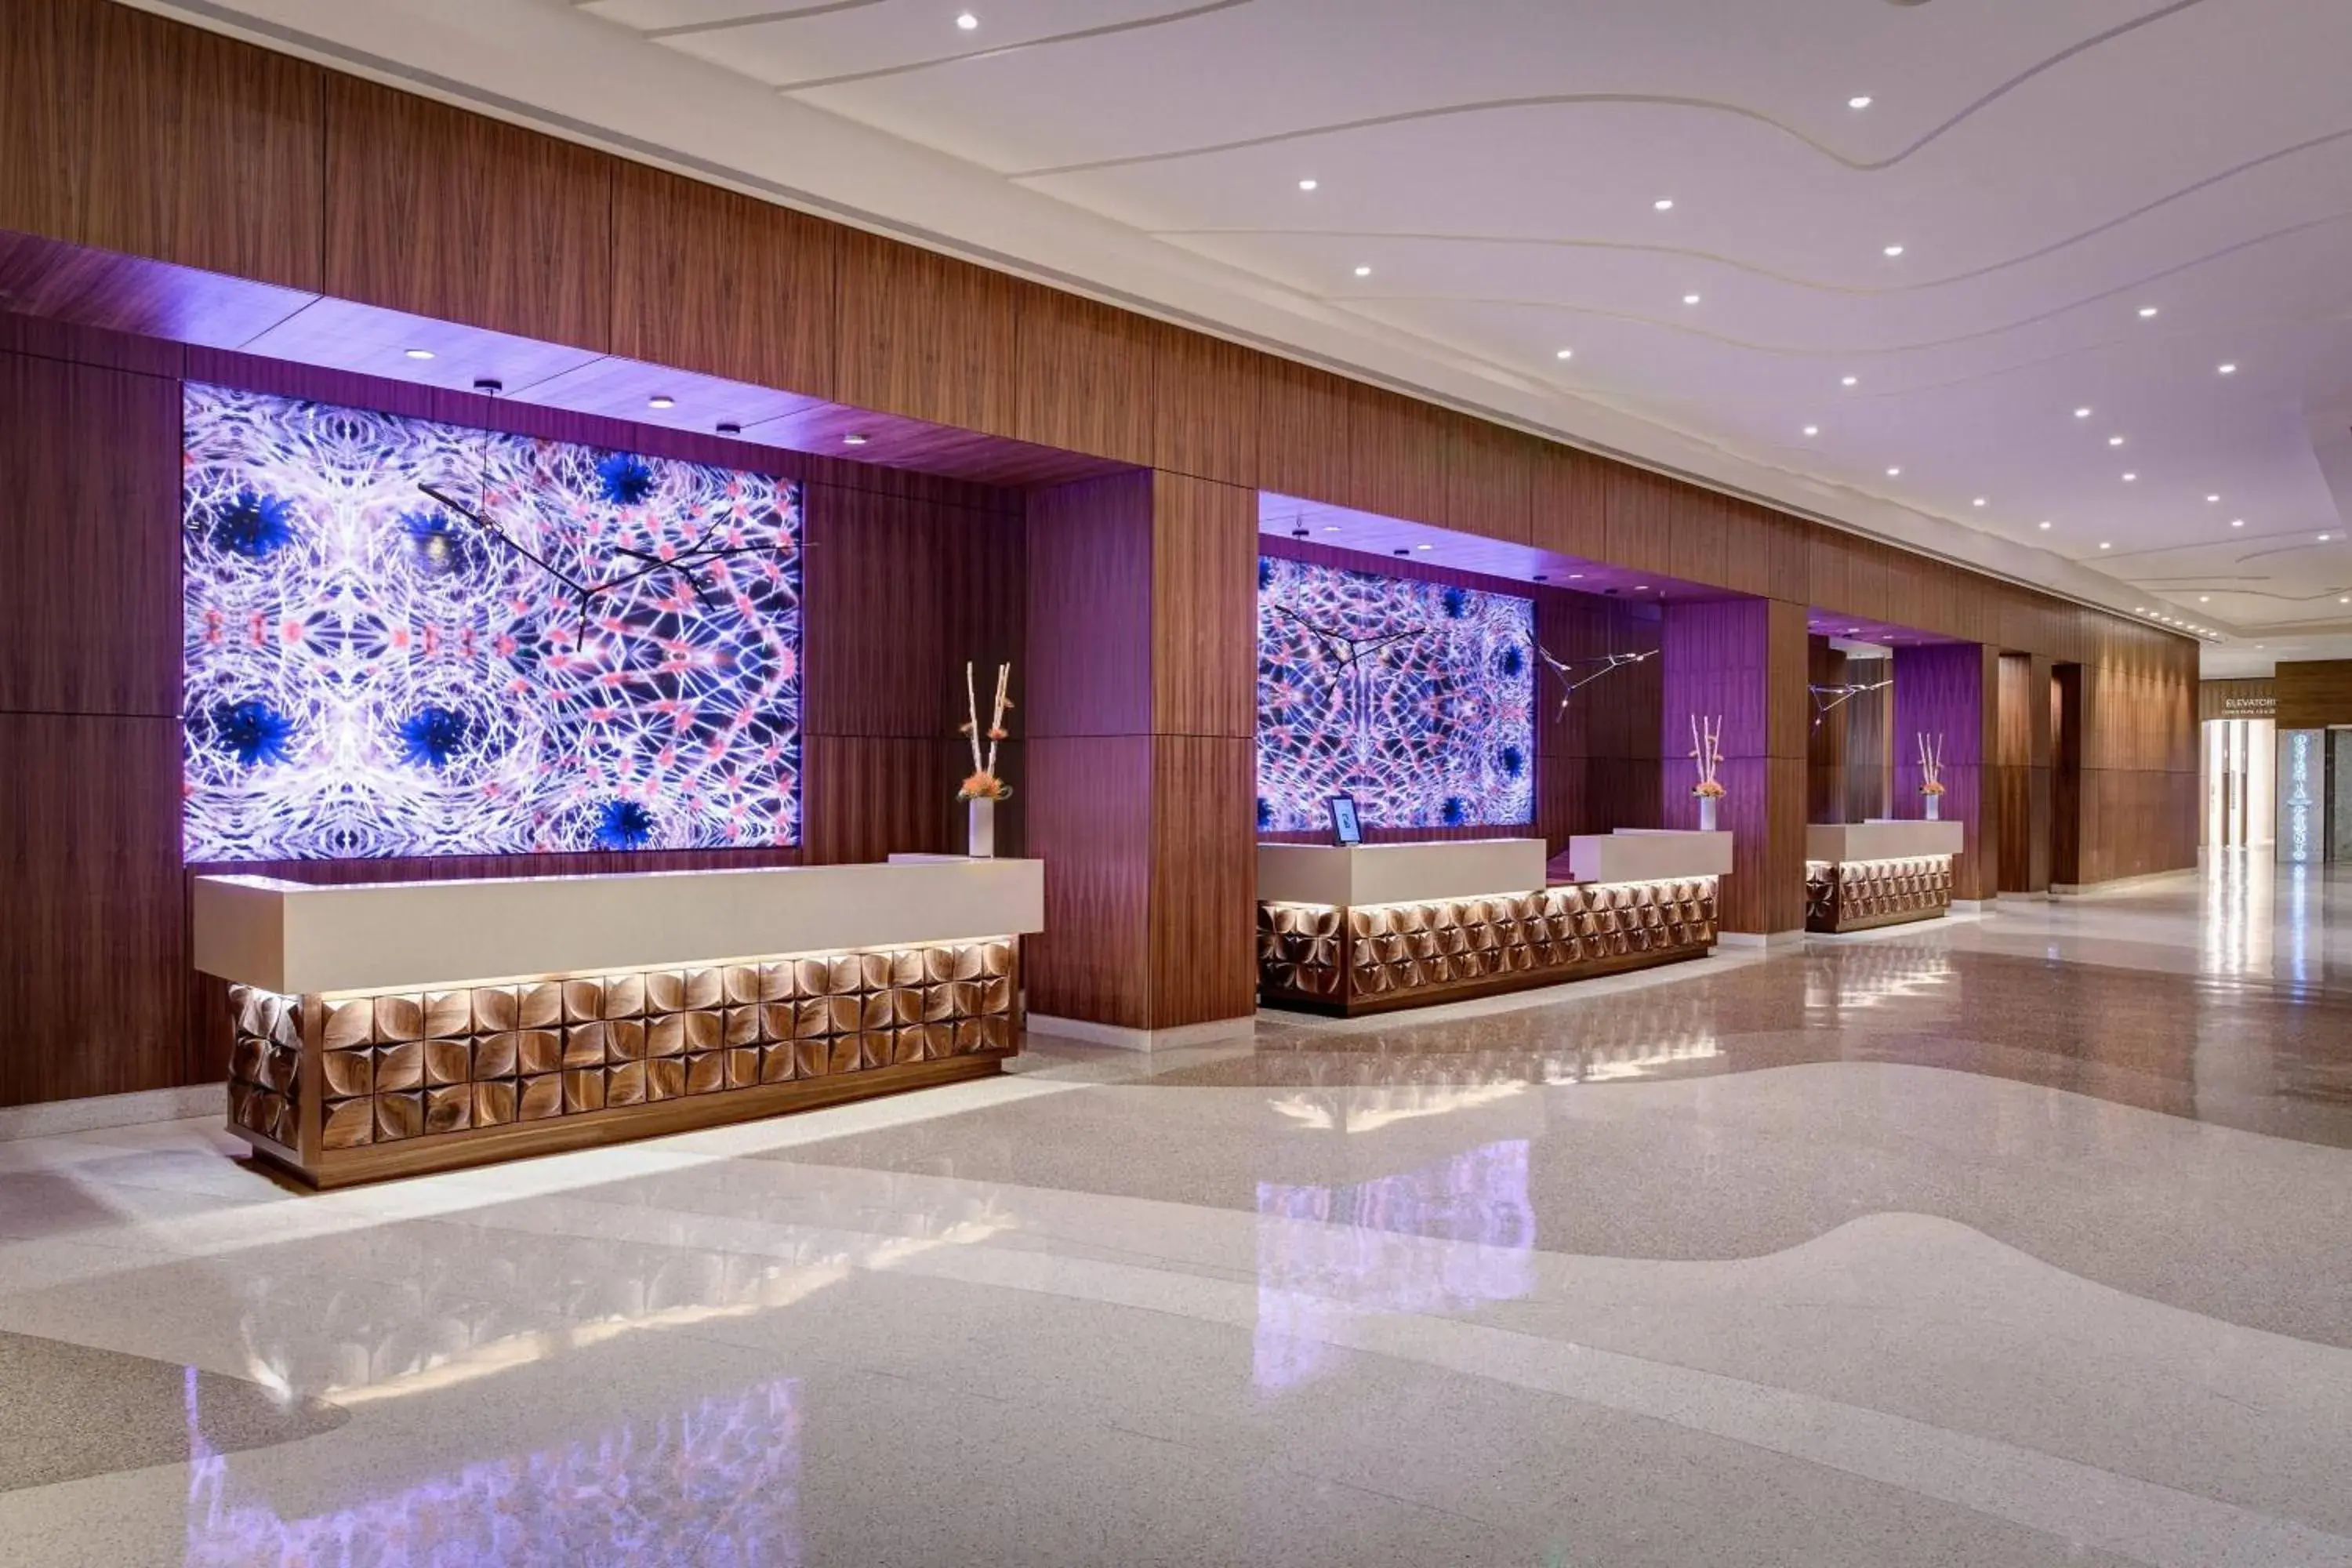 Lobby or reception in JW Marriott Austin